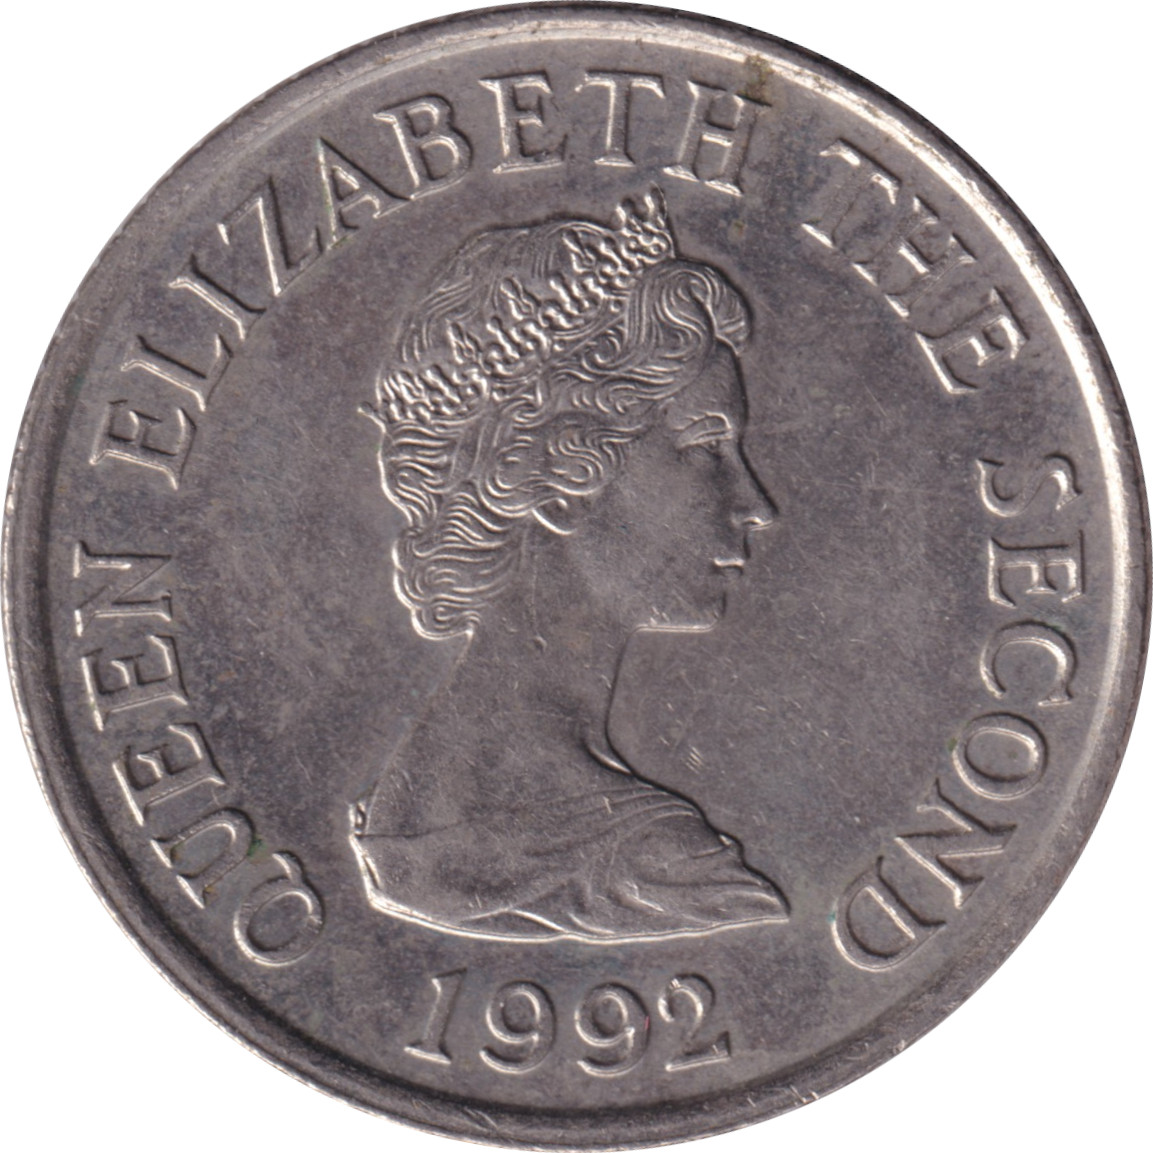 10 pence - Elizabeth II - Buste mature - Petit module